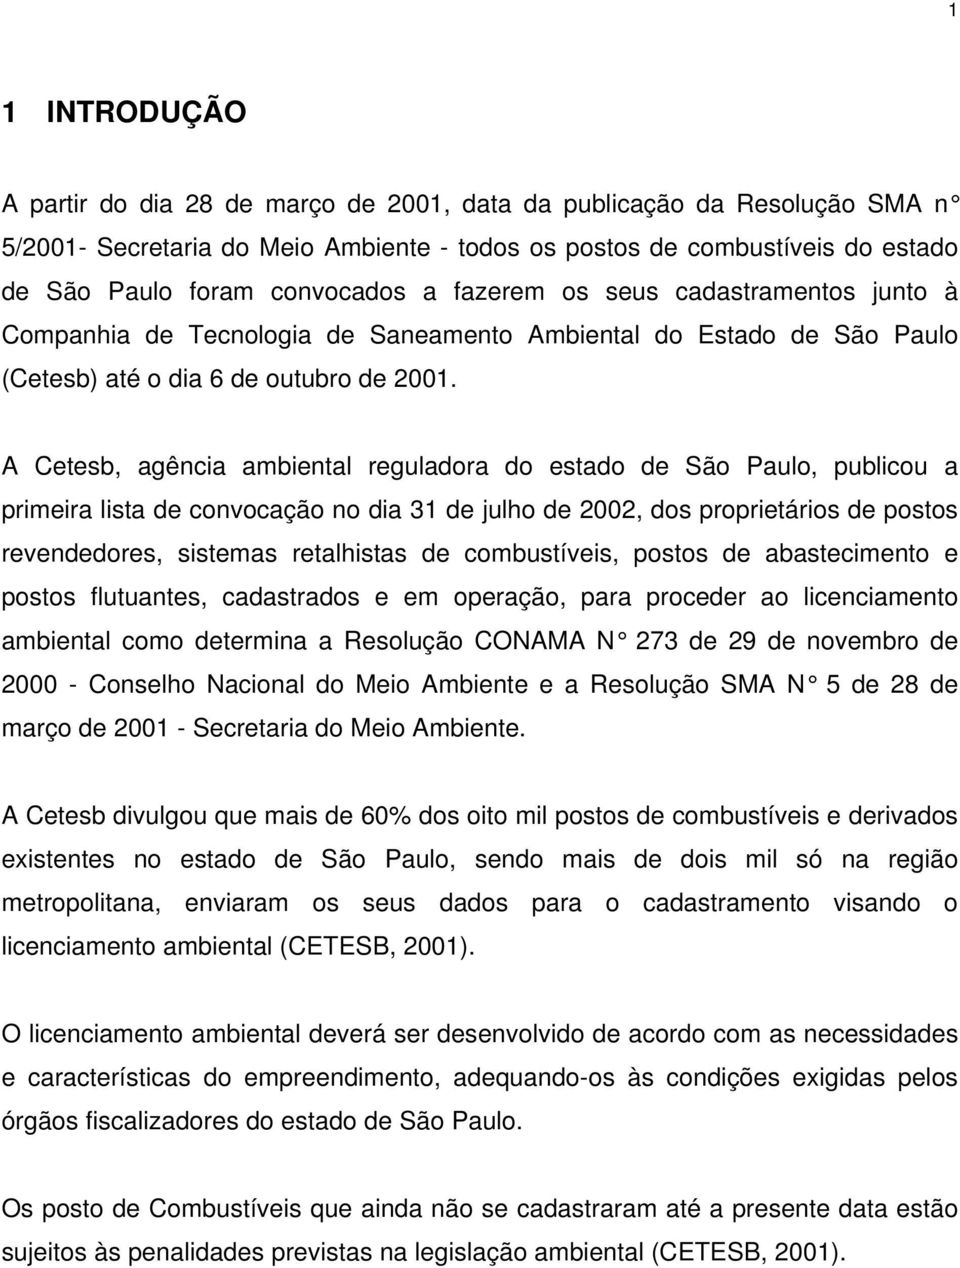 A Cetesb, agência ambiental reguladora do estado de São Paulo, publicou a primeira lista de convocação no dia 31 de julho de 2002, dos proprietários de postos revendedores, sistemas retalhistas de